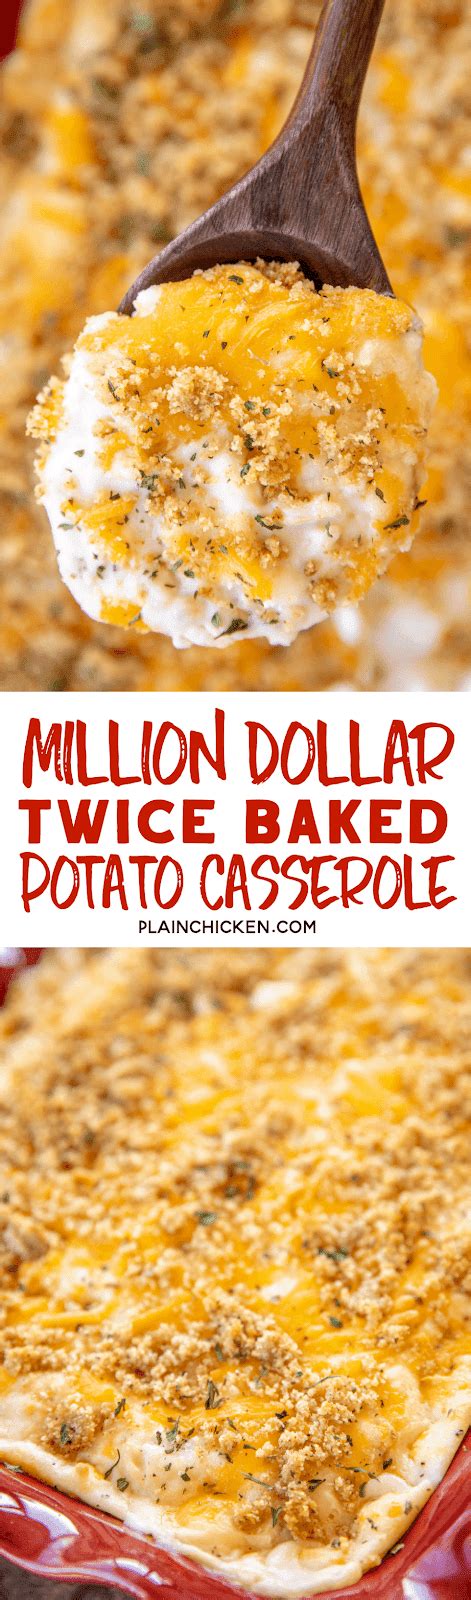 Million Dollar Twice Baked Potato Casserole Plain Chicken